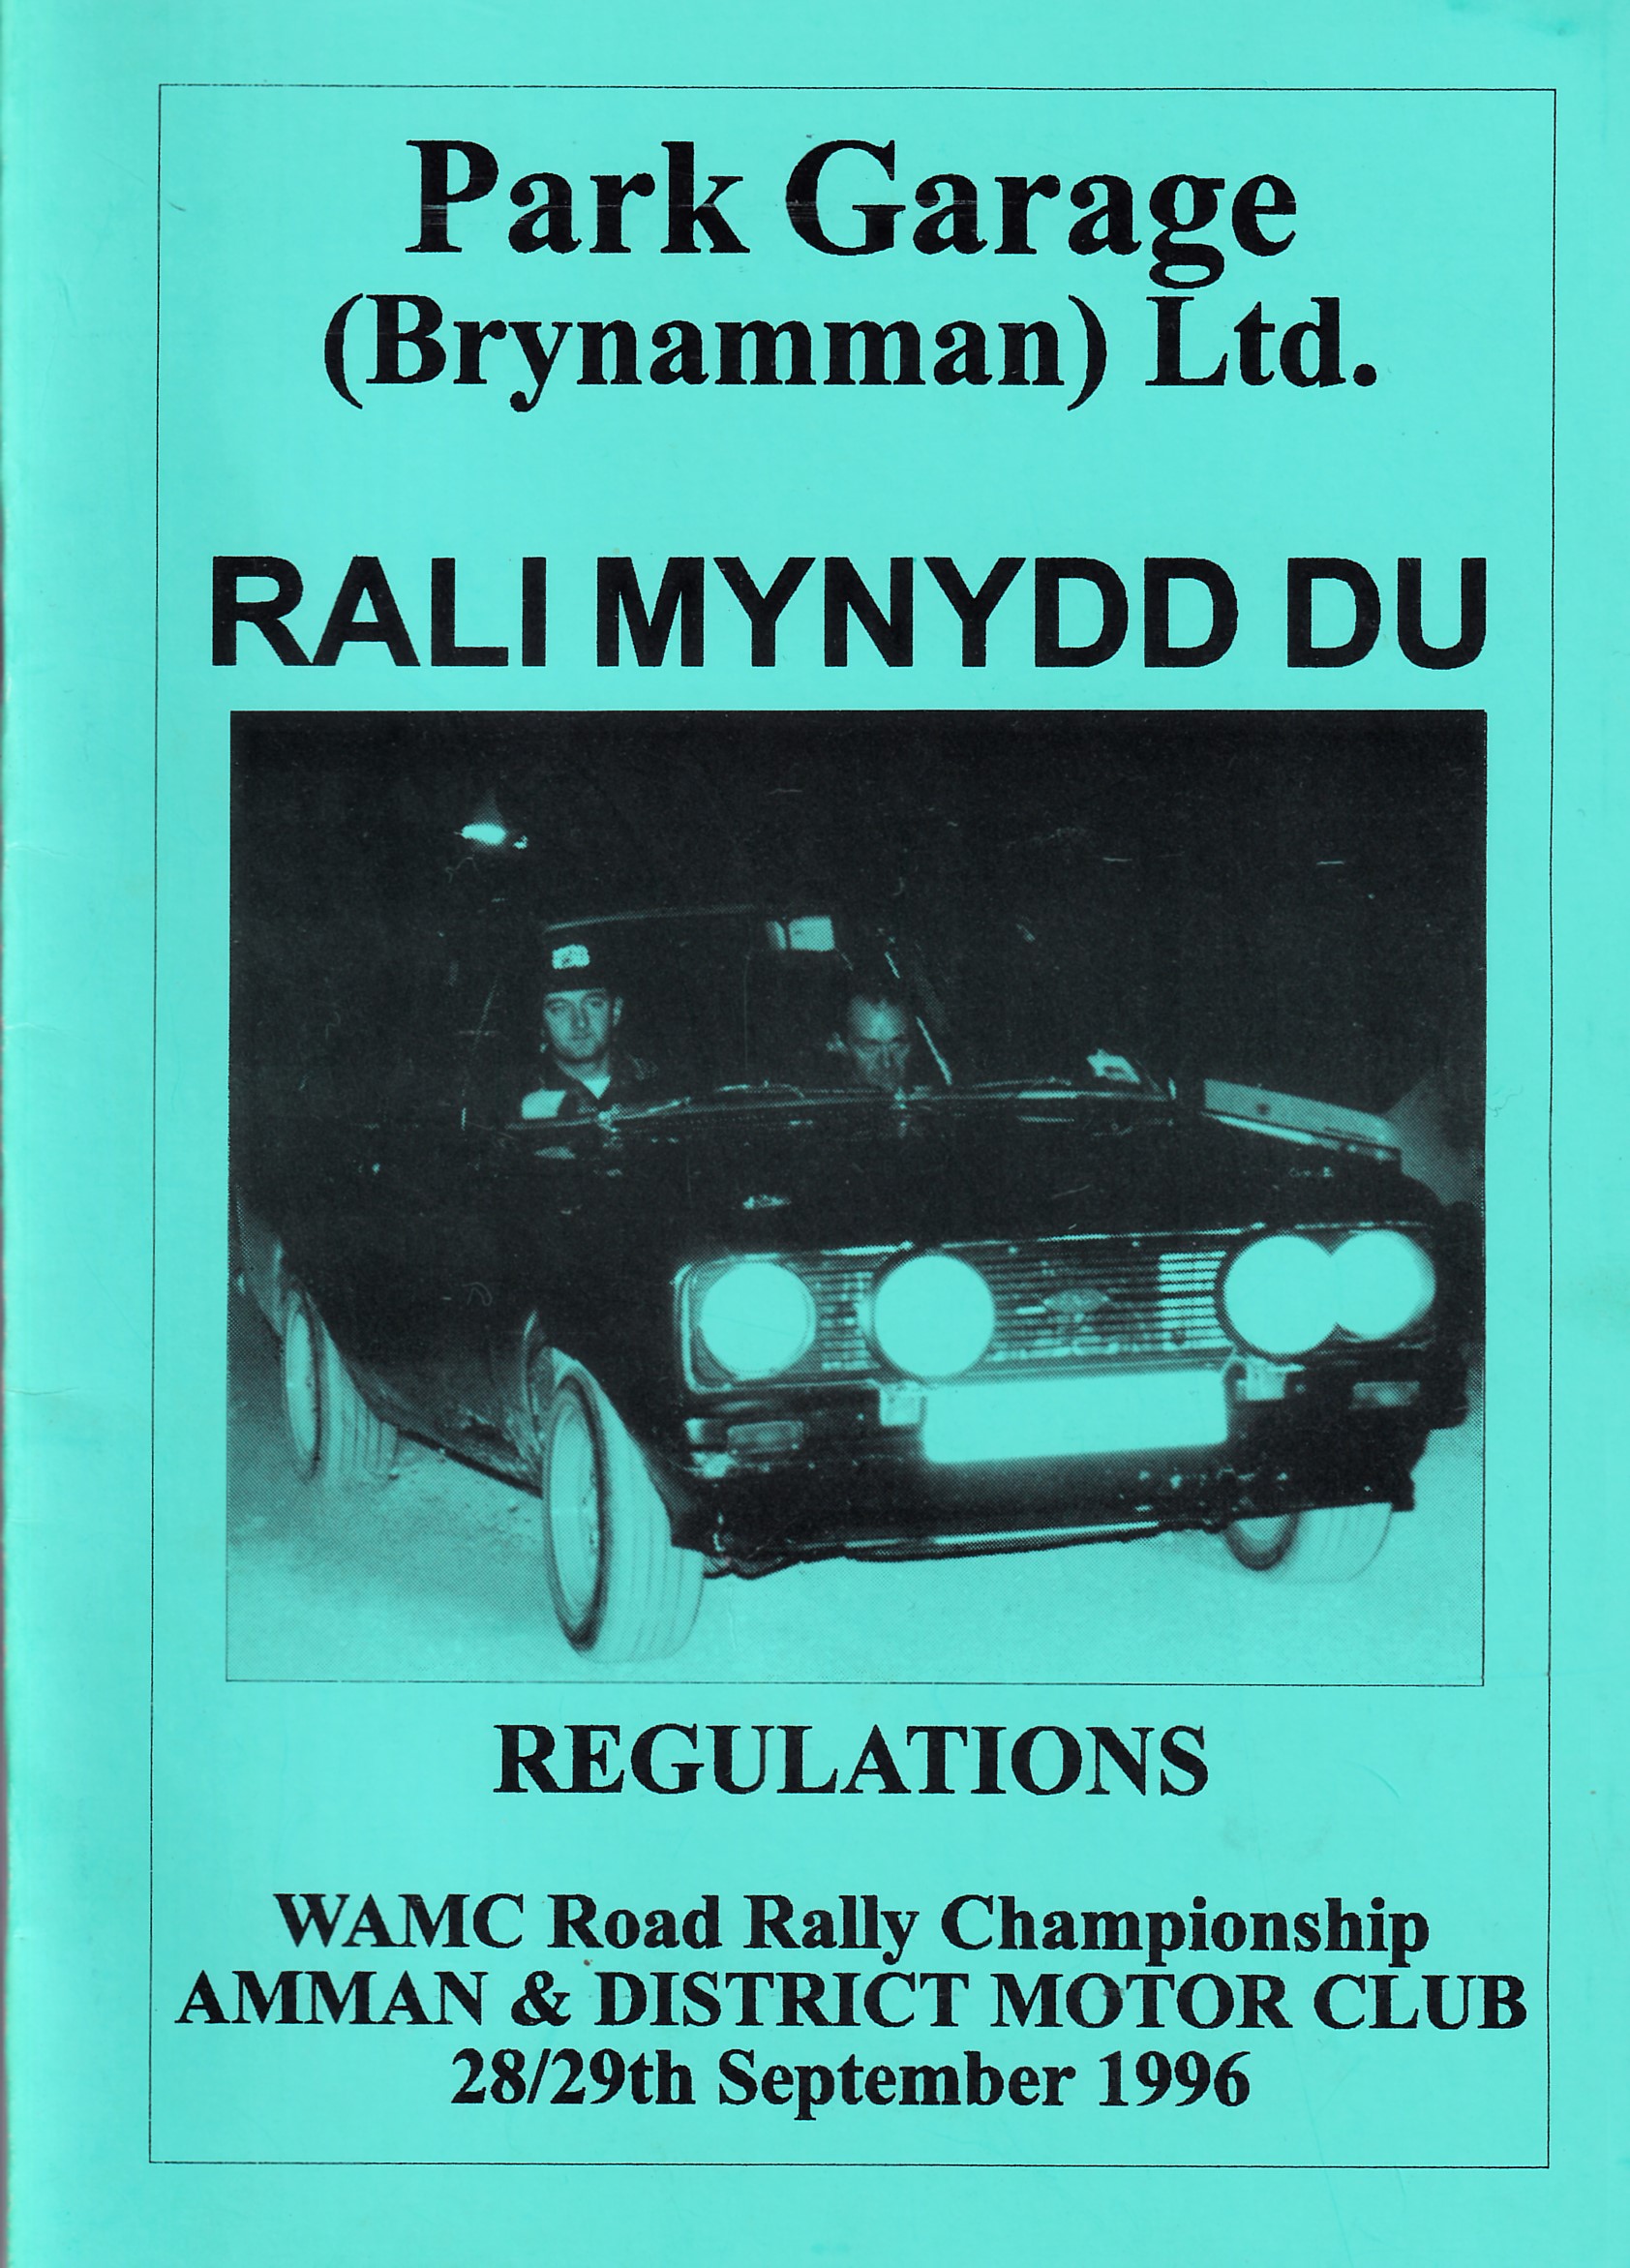 Rali Mynydd Ddu 1996